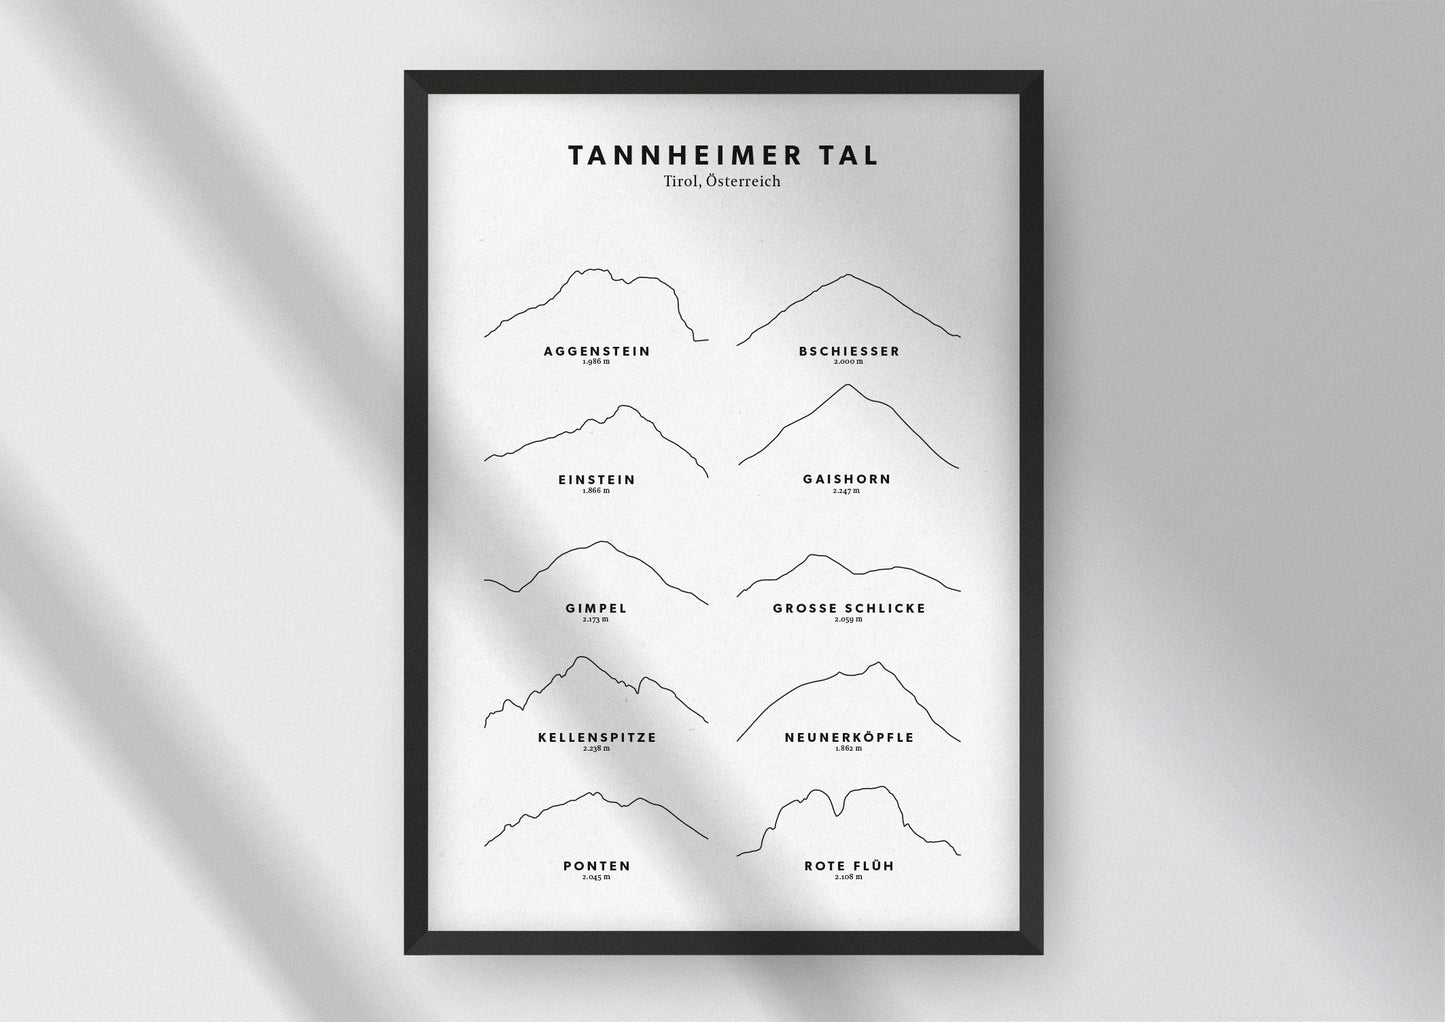 Minimalistische Illustration des Tannheimer Tals in Tirol, als stilvoller Einrichtungsgegenstand für Zuhause.